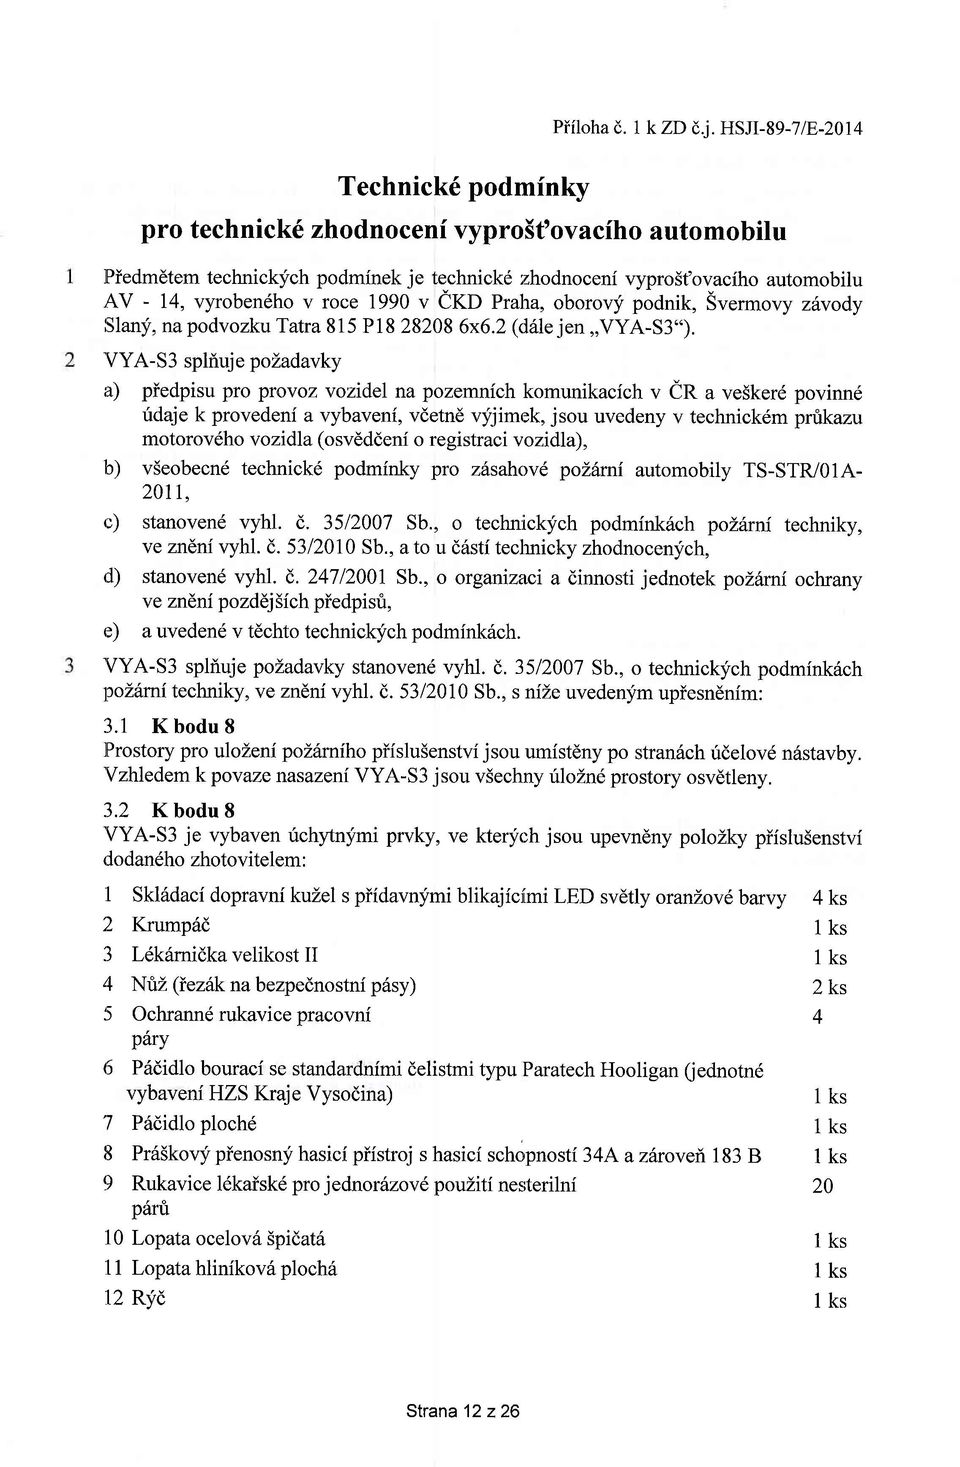 oborovy podnik, Svermovy zdvody islany, na podvozku Tatra 815 Pl8 28208 6x6.2 (drile jen,,vya-s3").